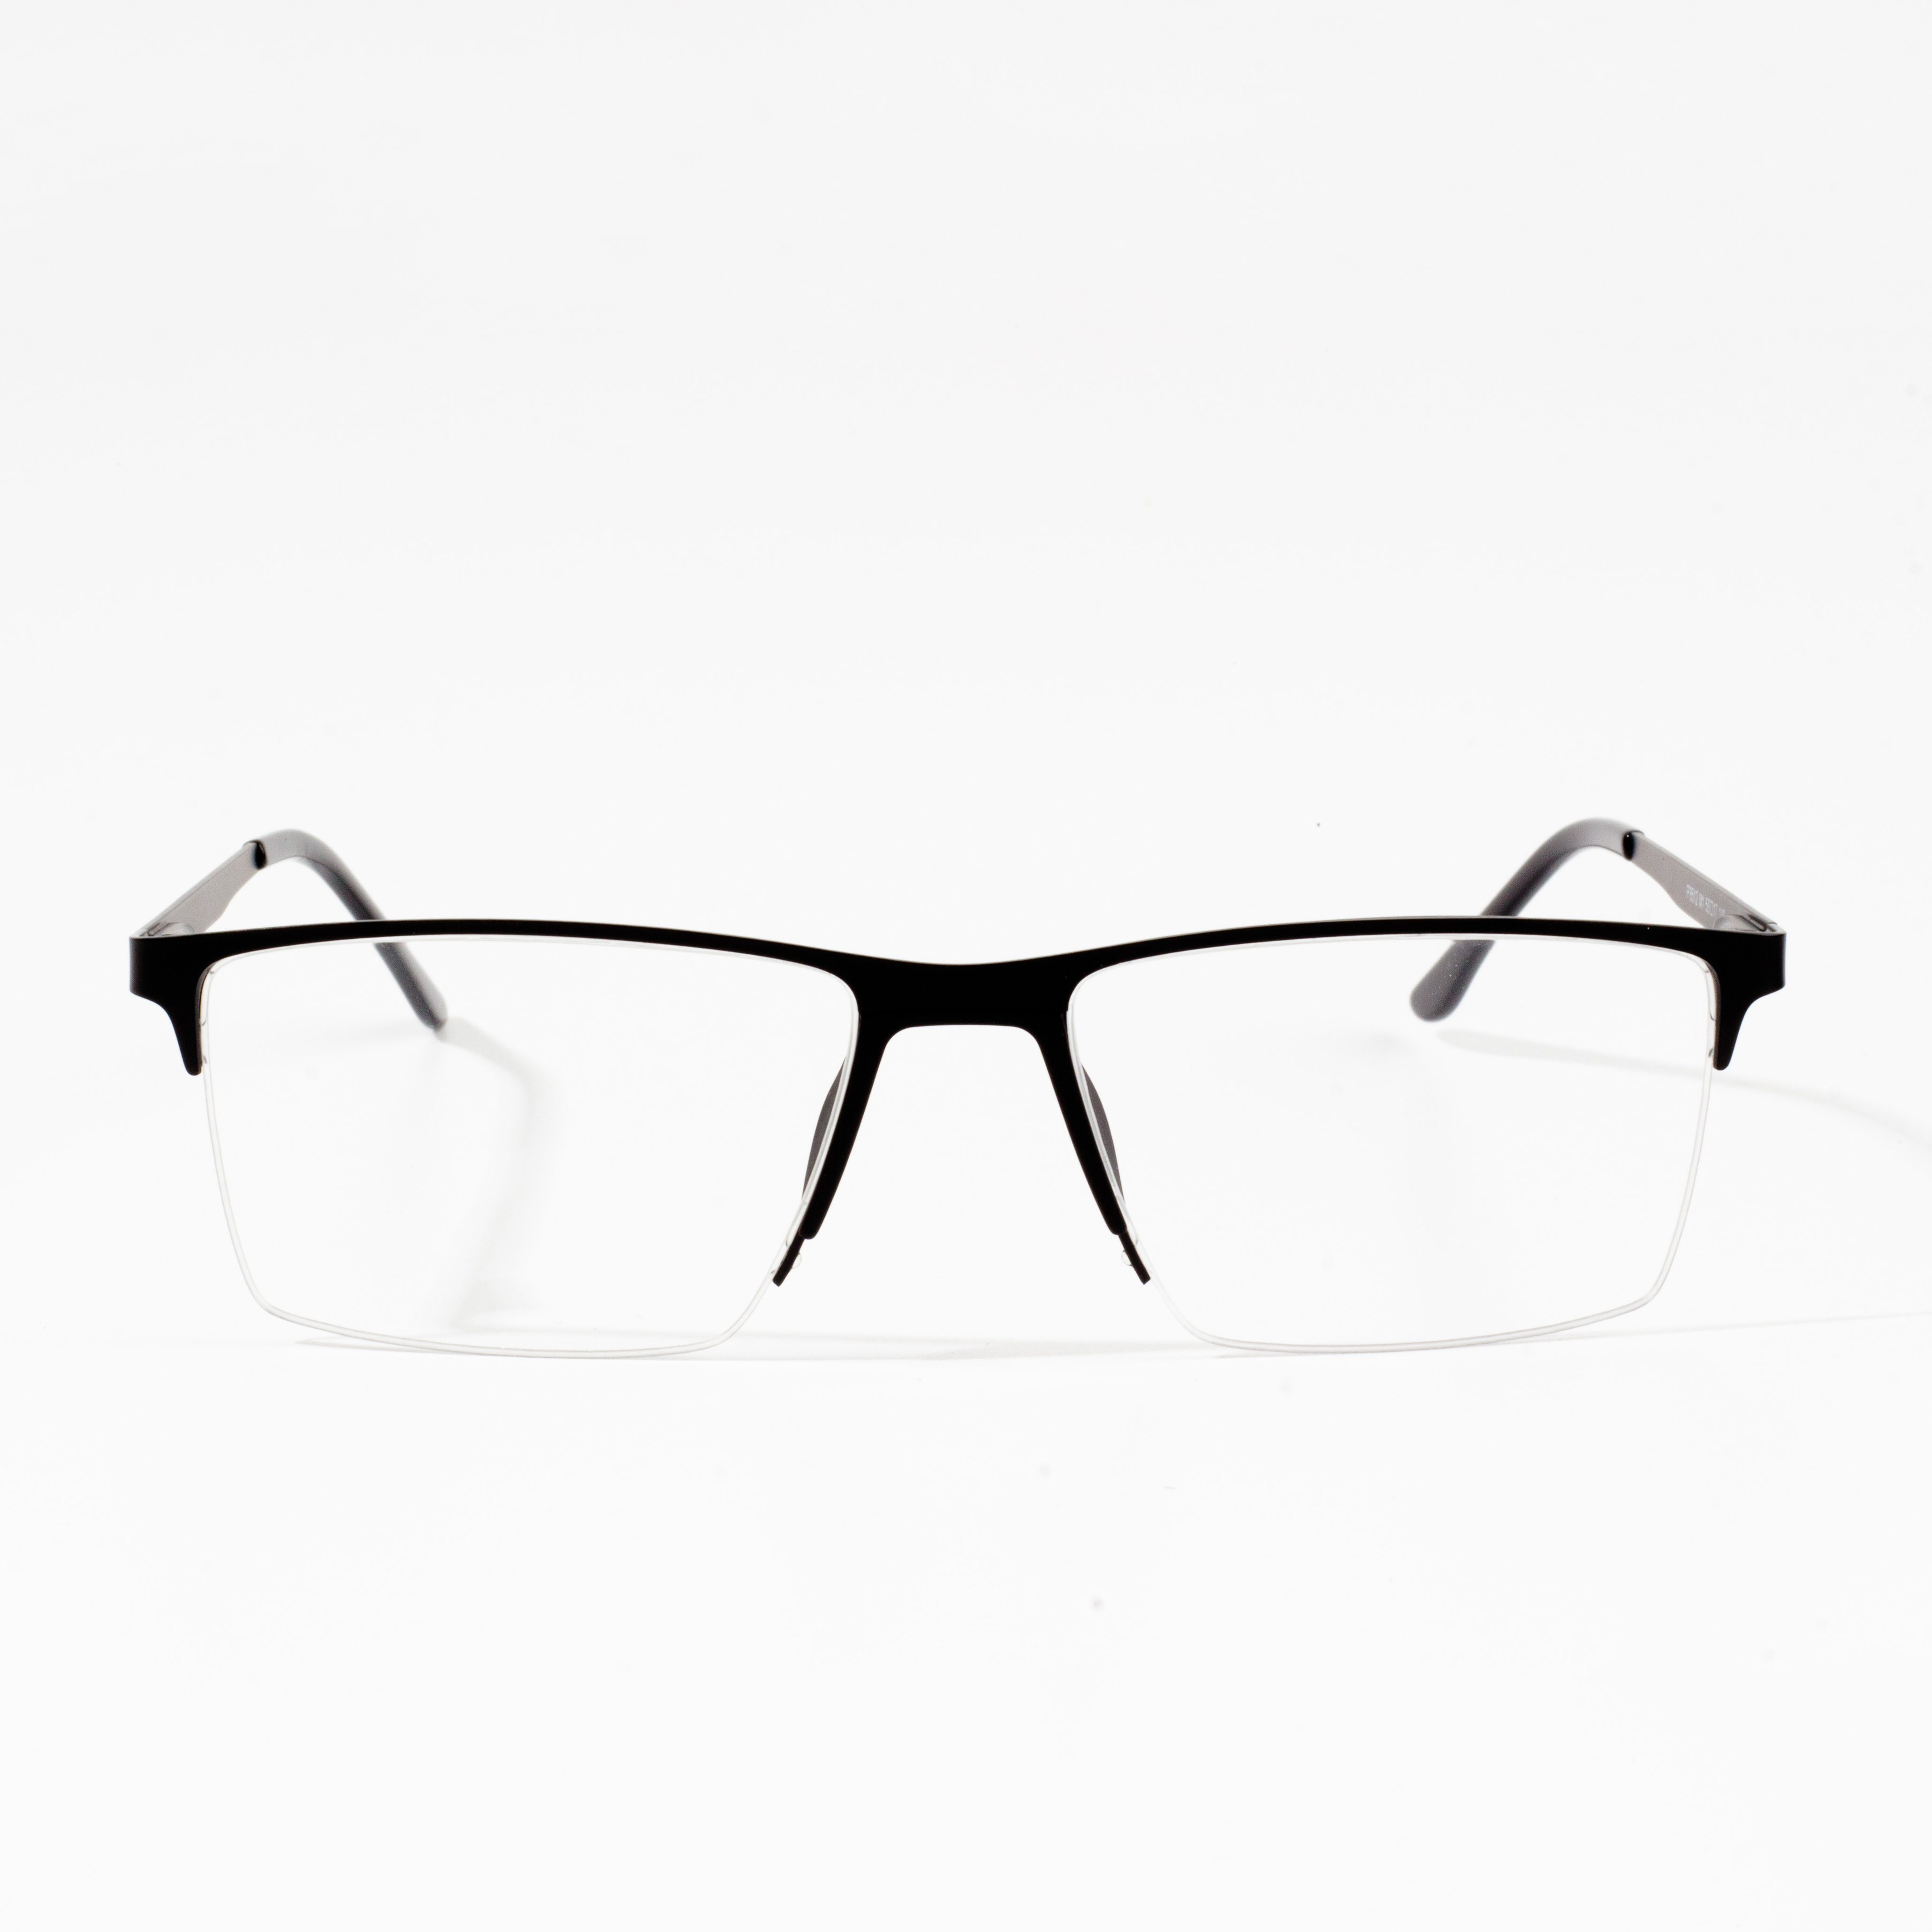 Vente chaude de montures de lunettes pour hommes sur le marché